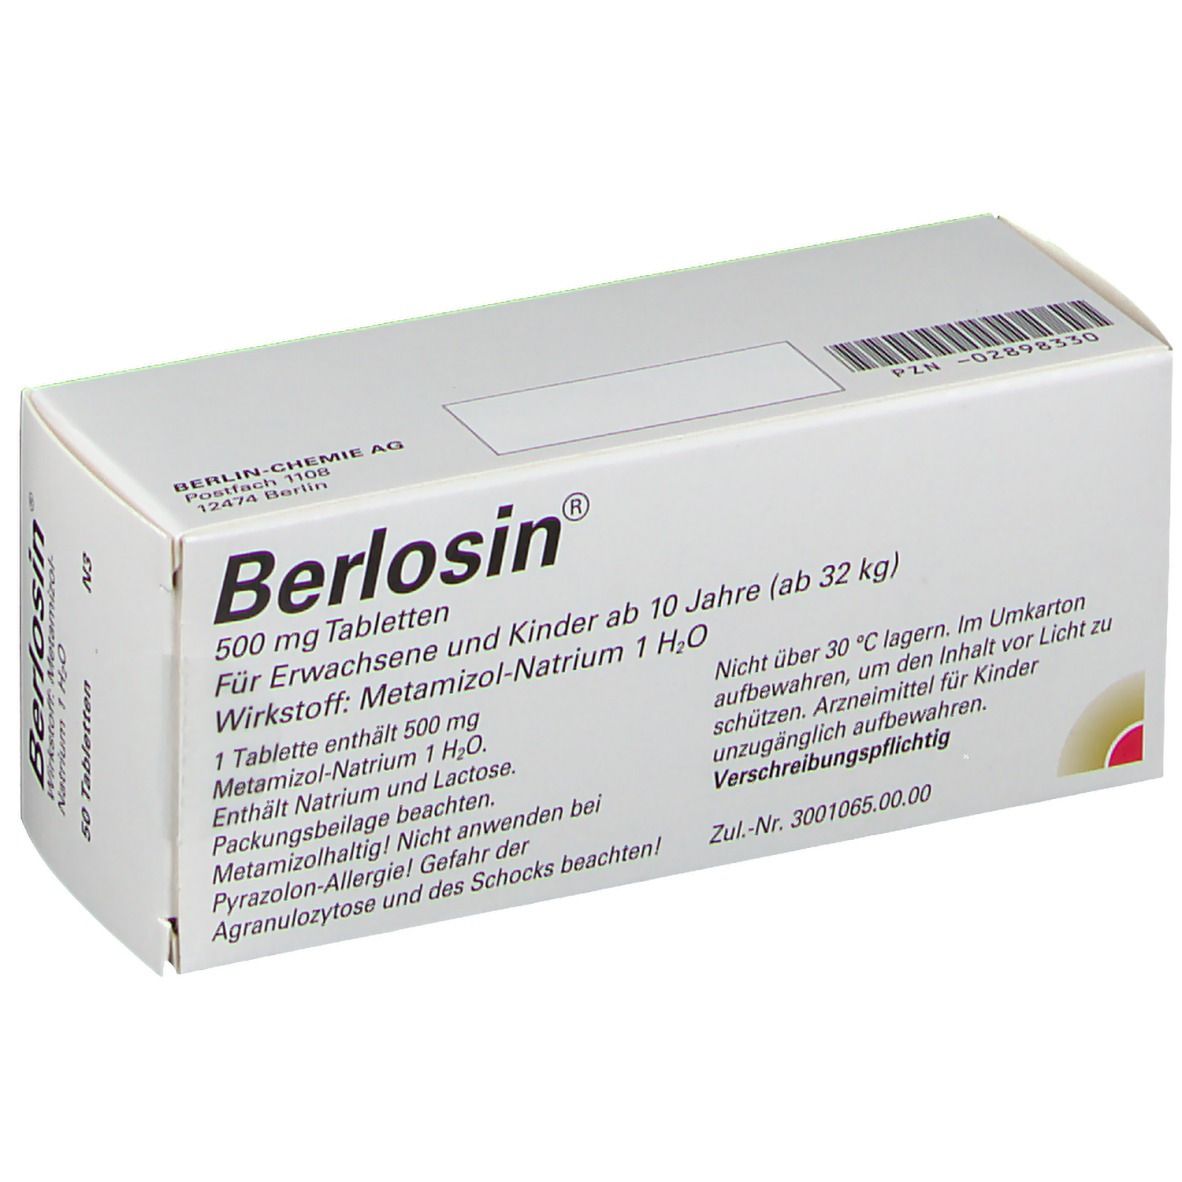 Berlosin® 500 mg